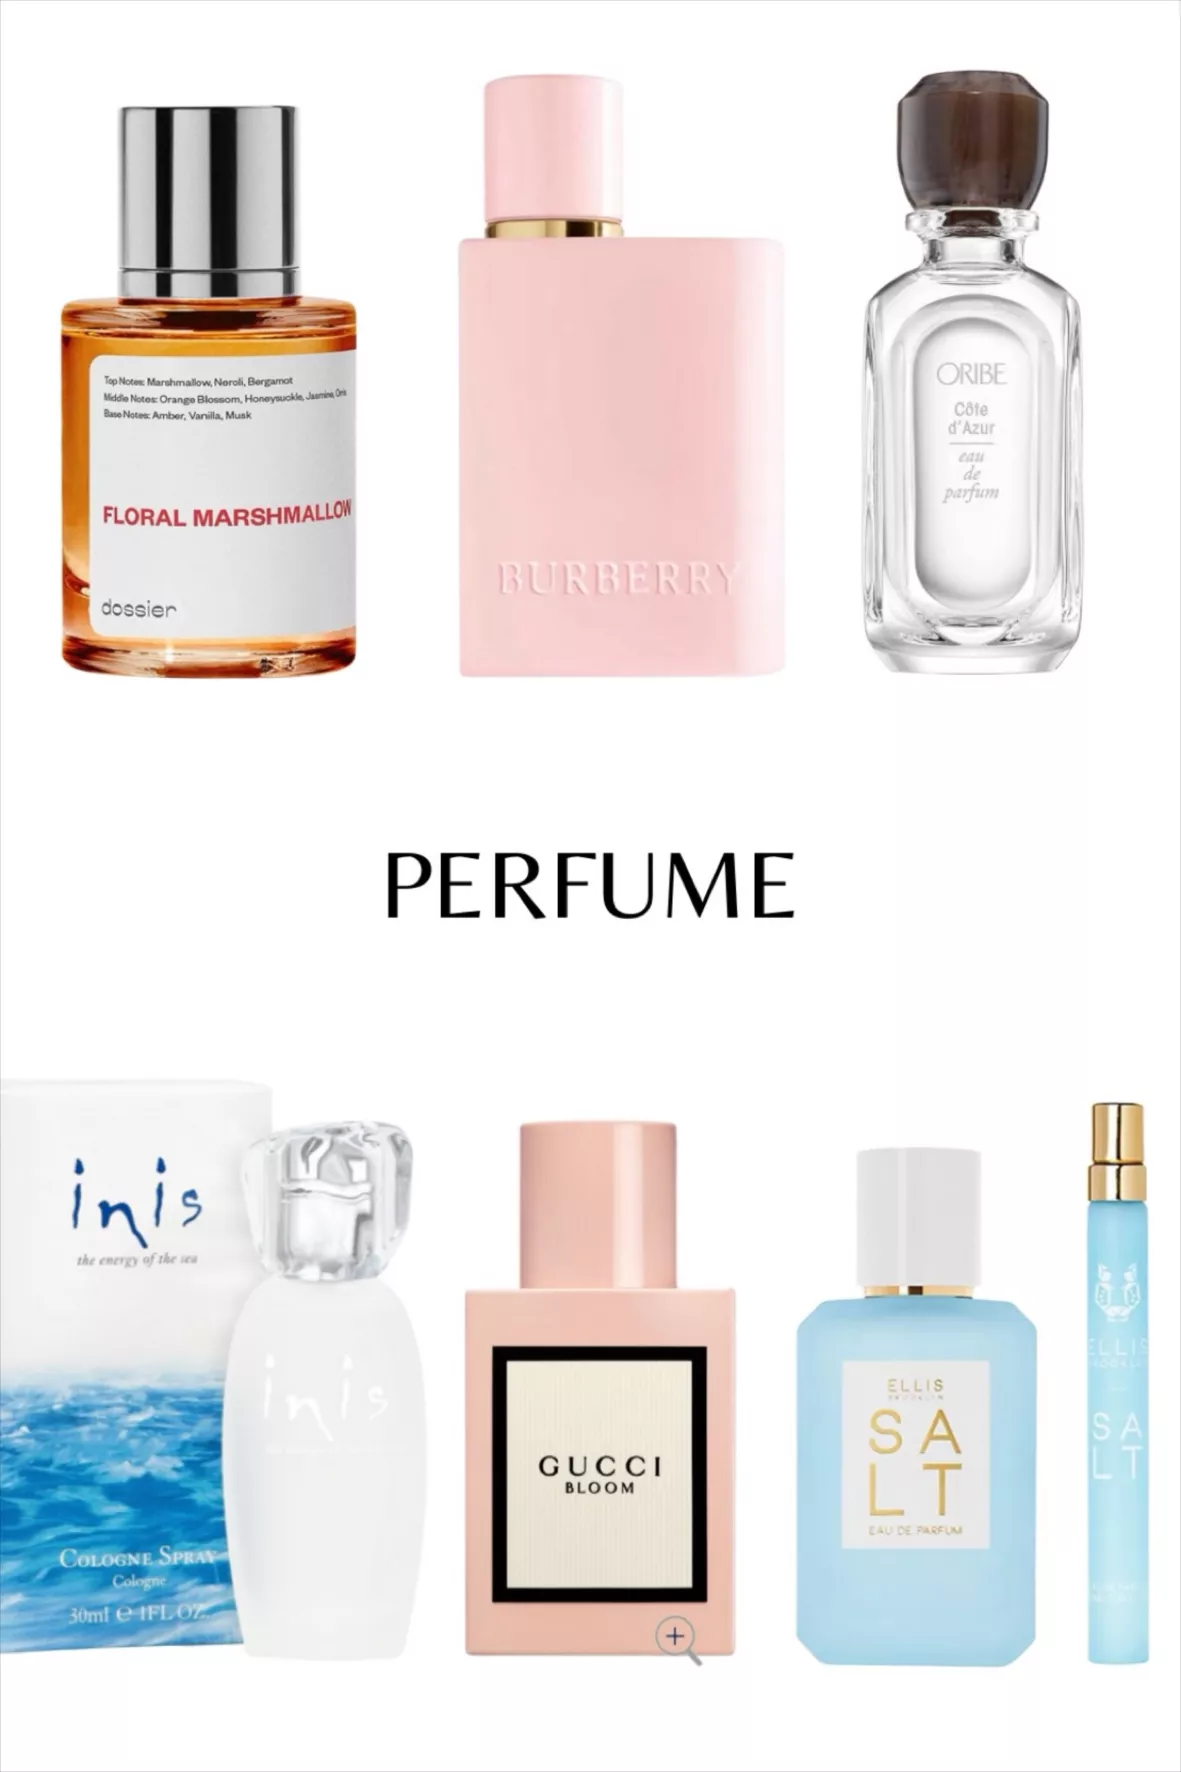 Côte d'Azur Eau de Parfum curated on LTK